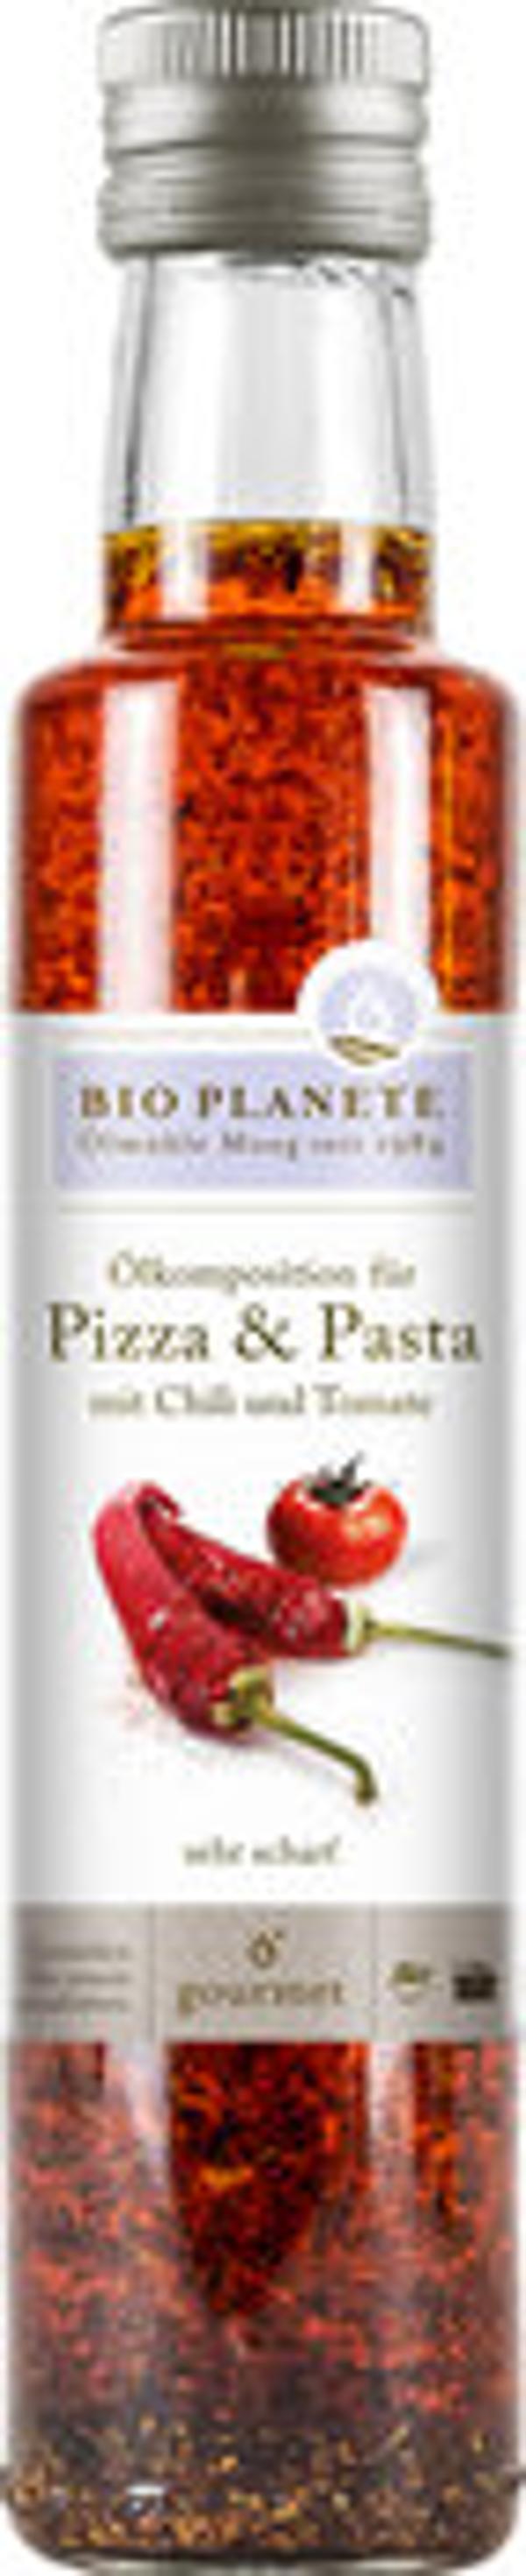 Produktfoto zu Ölkomposition für Pizza & Pasta mit Chili & Tomate